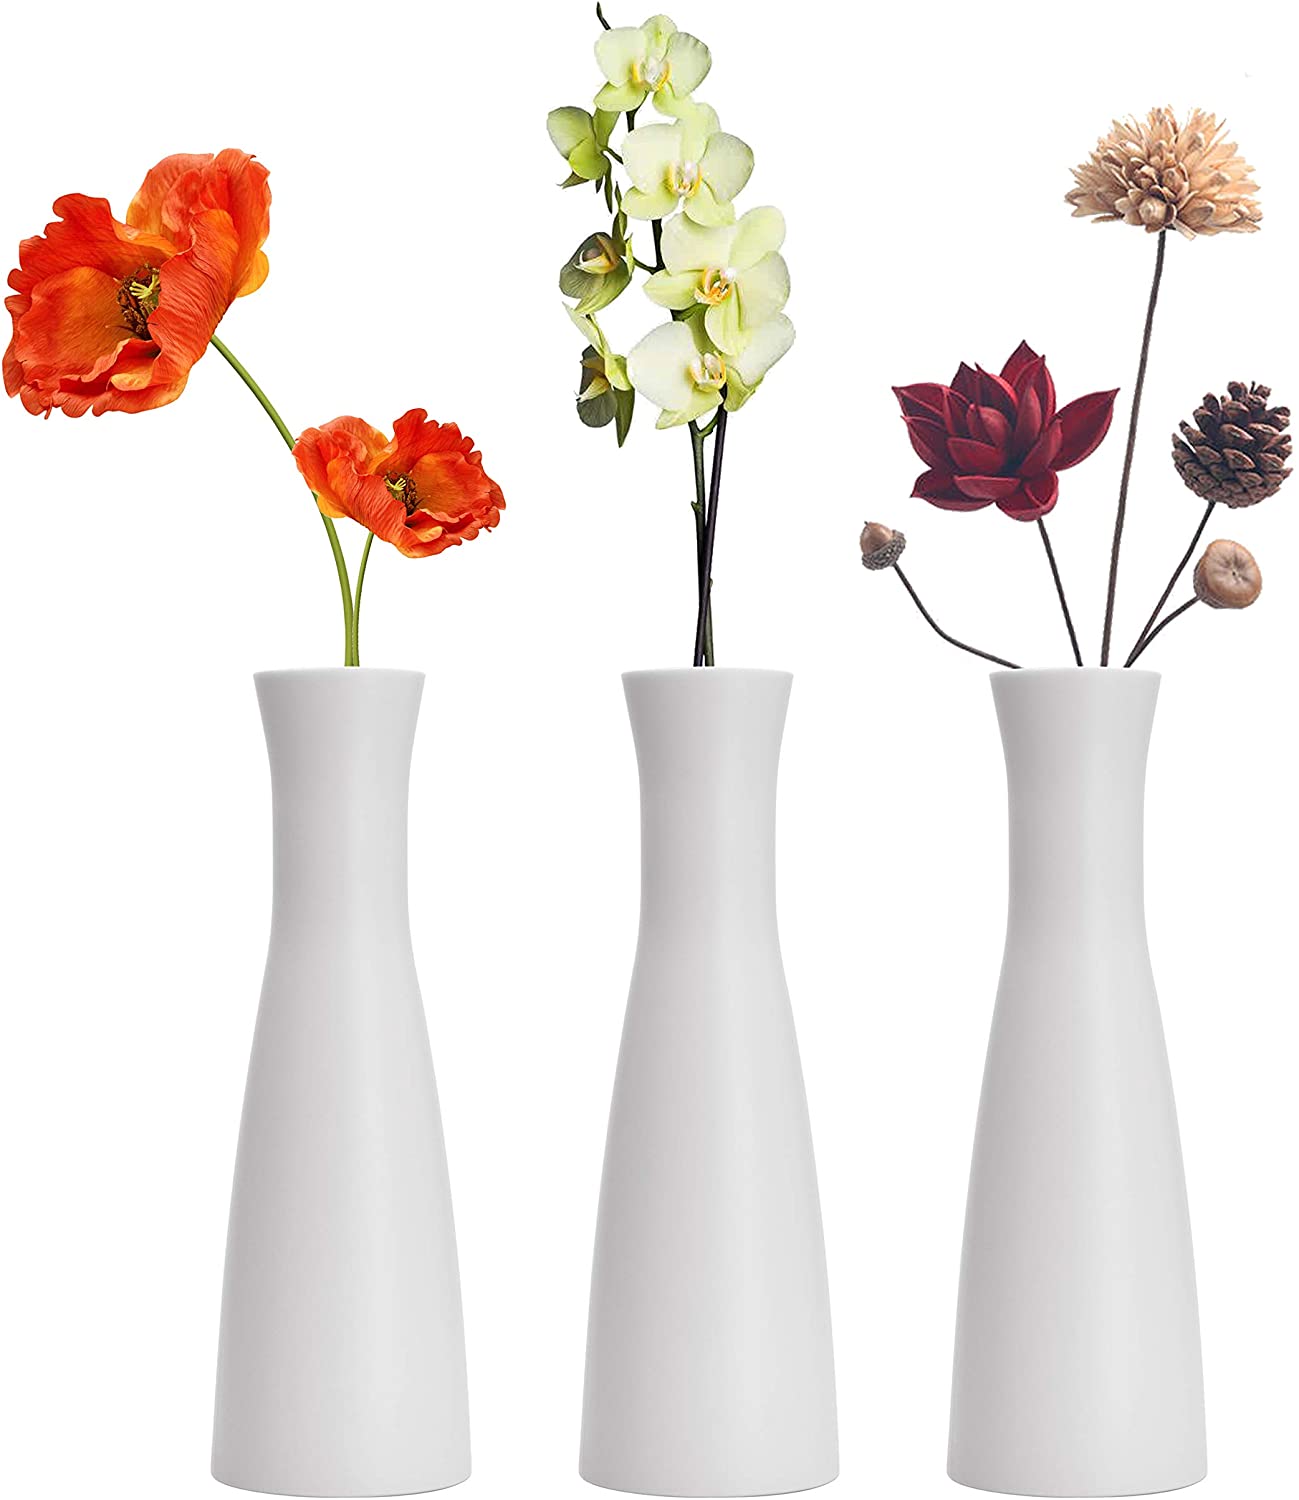 Tall Conic Composite Plastics Flower Vase